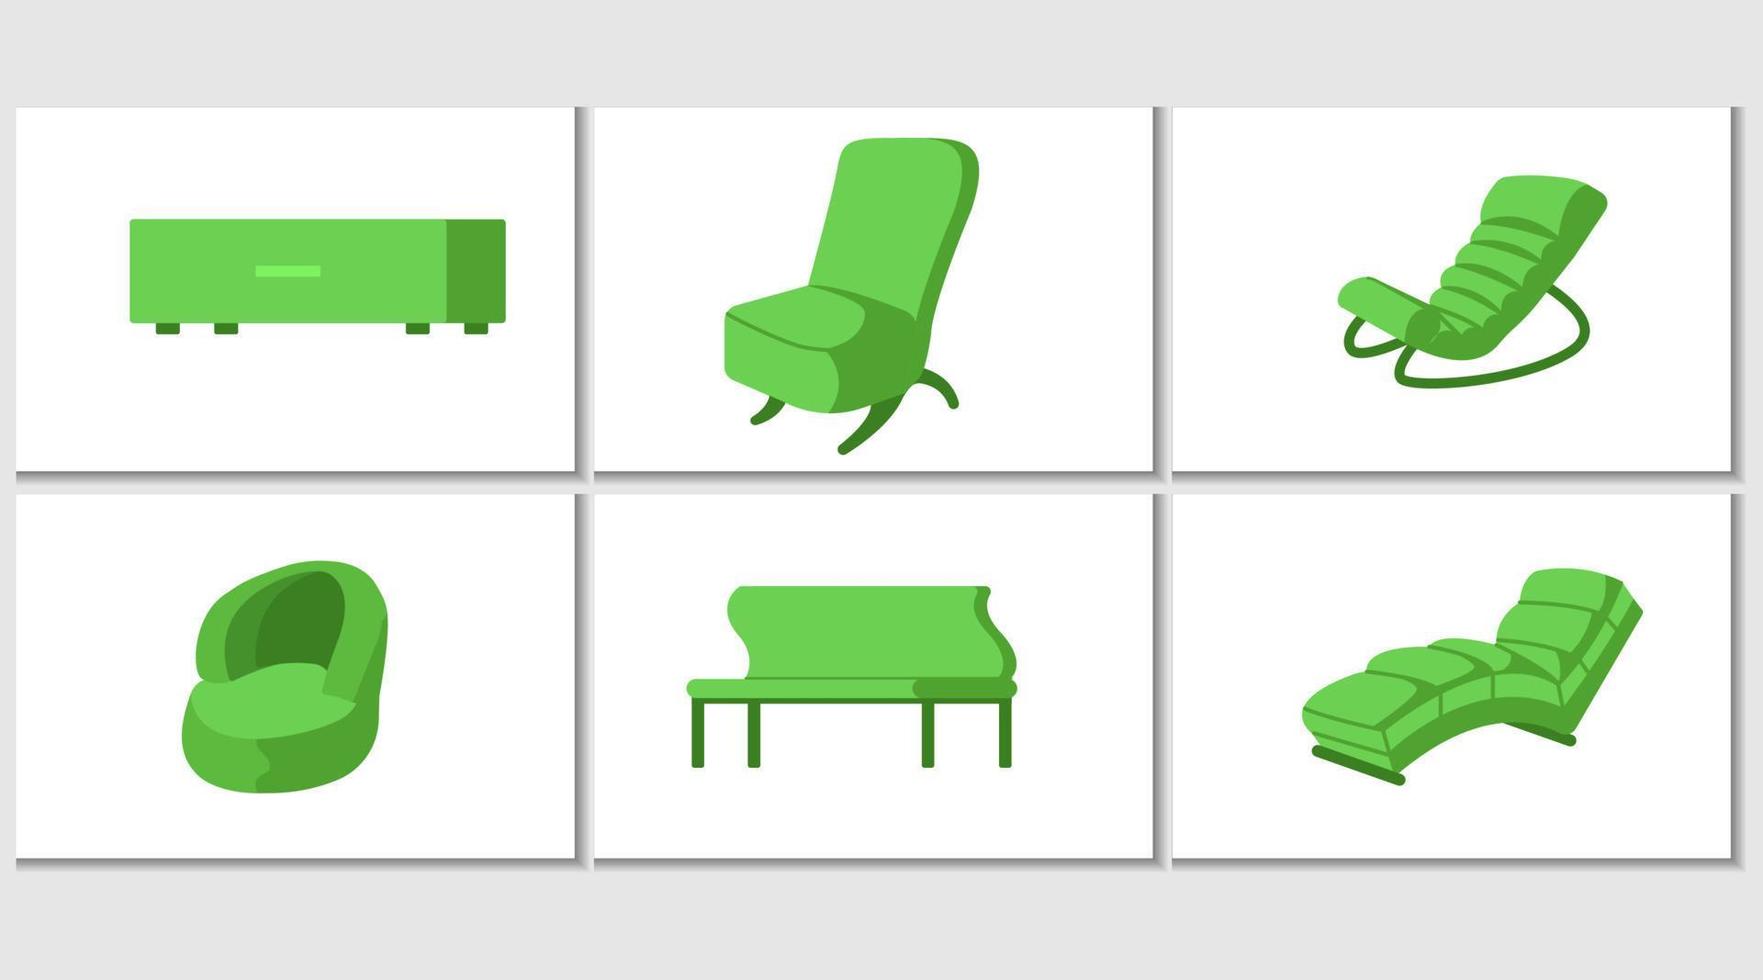 reeks van meubilair voor zitten. stoelen, fauteuils, ontlasting pictogrammen. vector illustratie